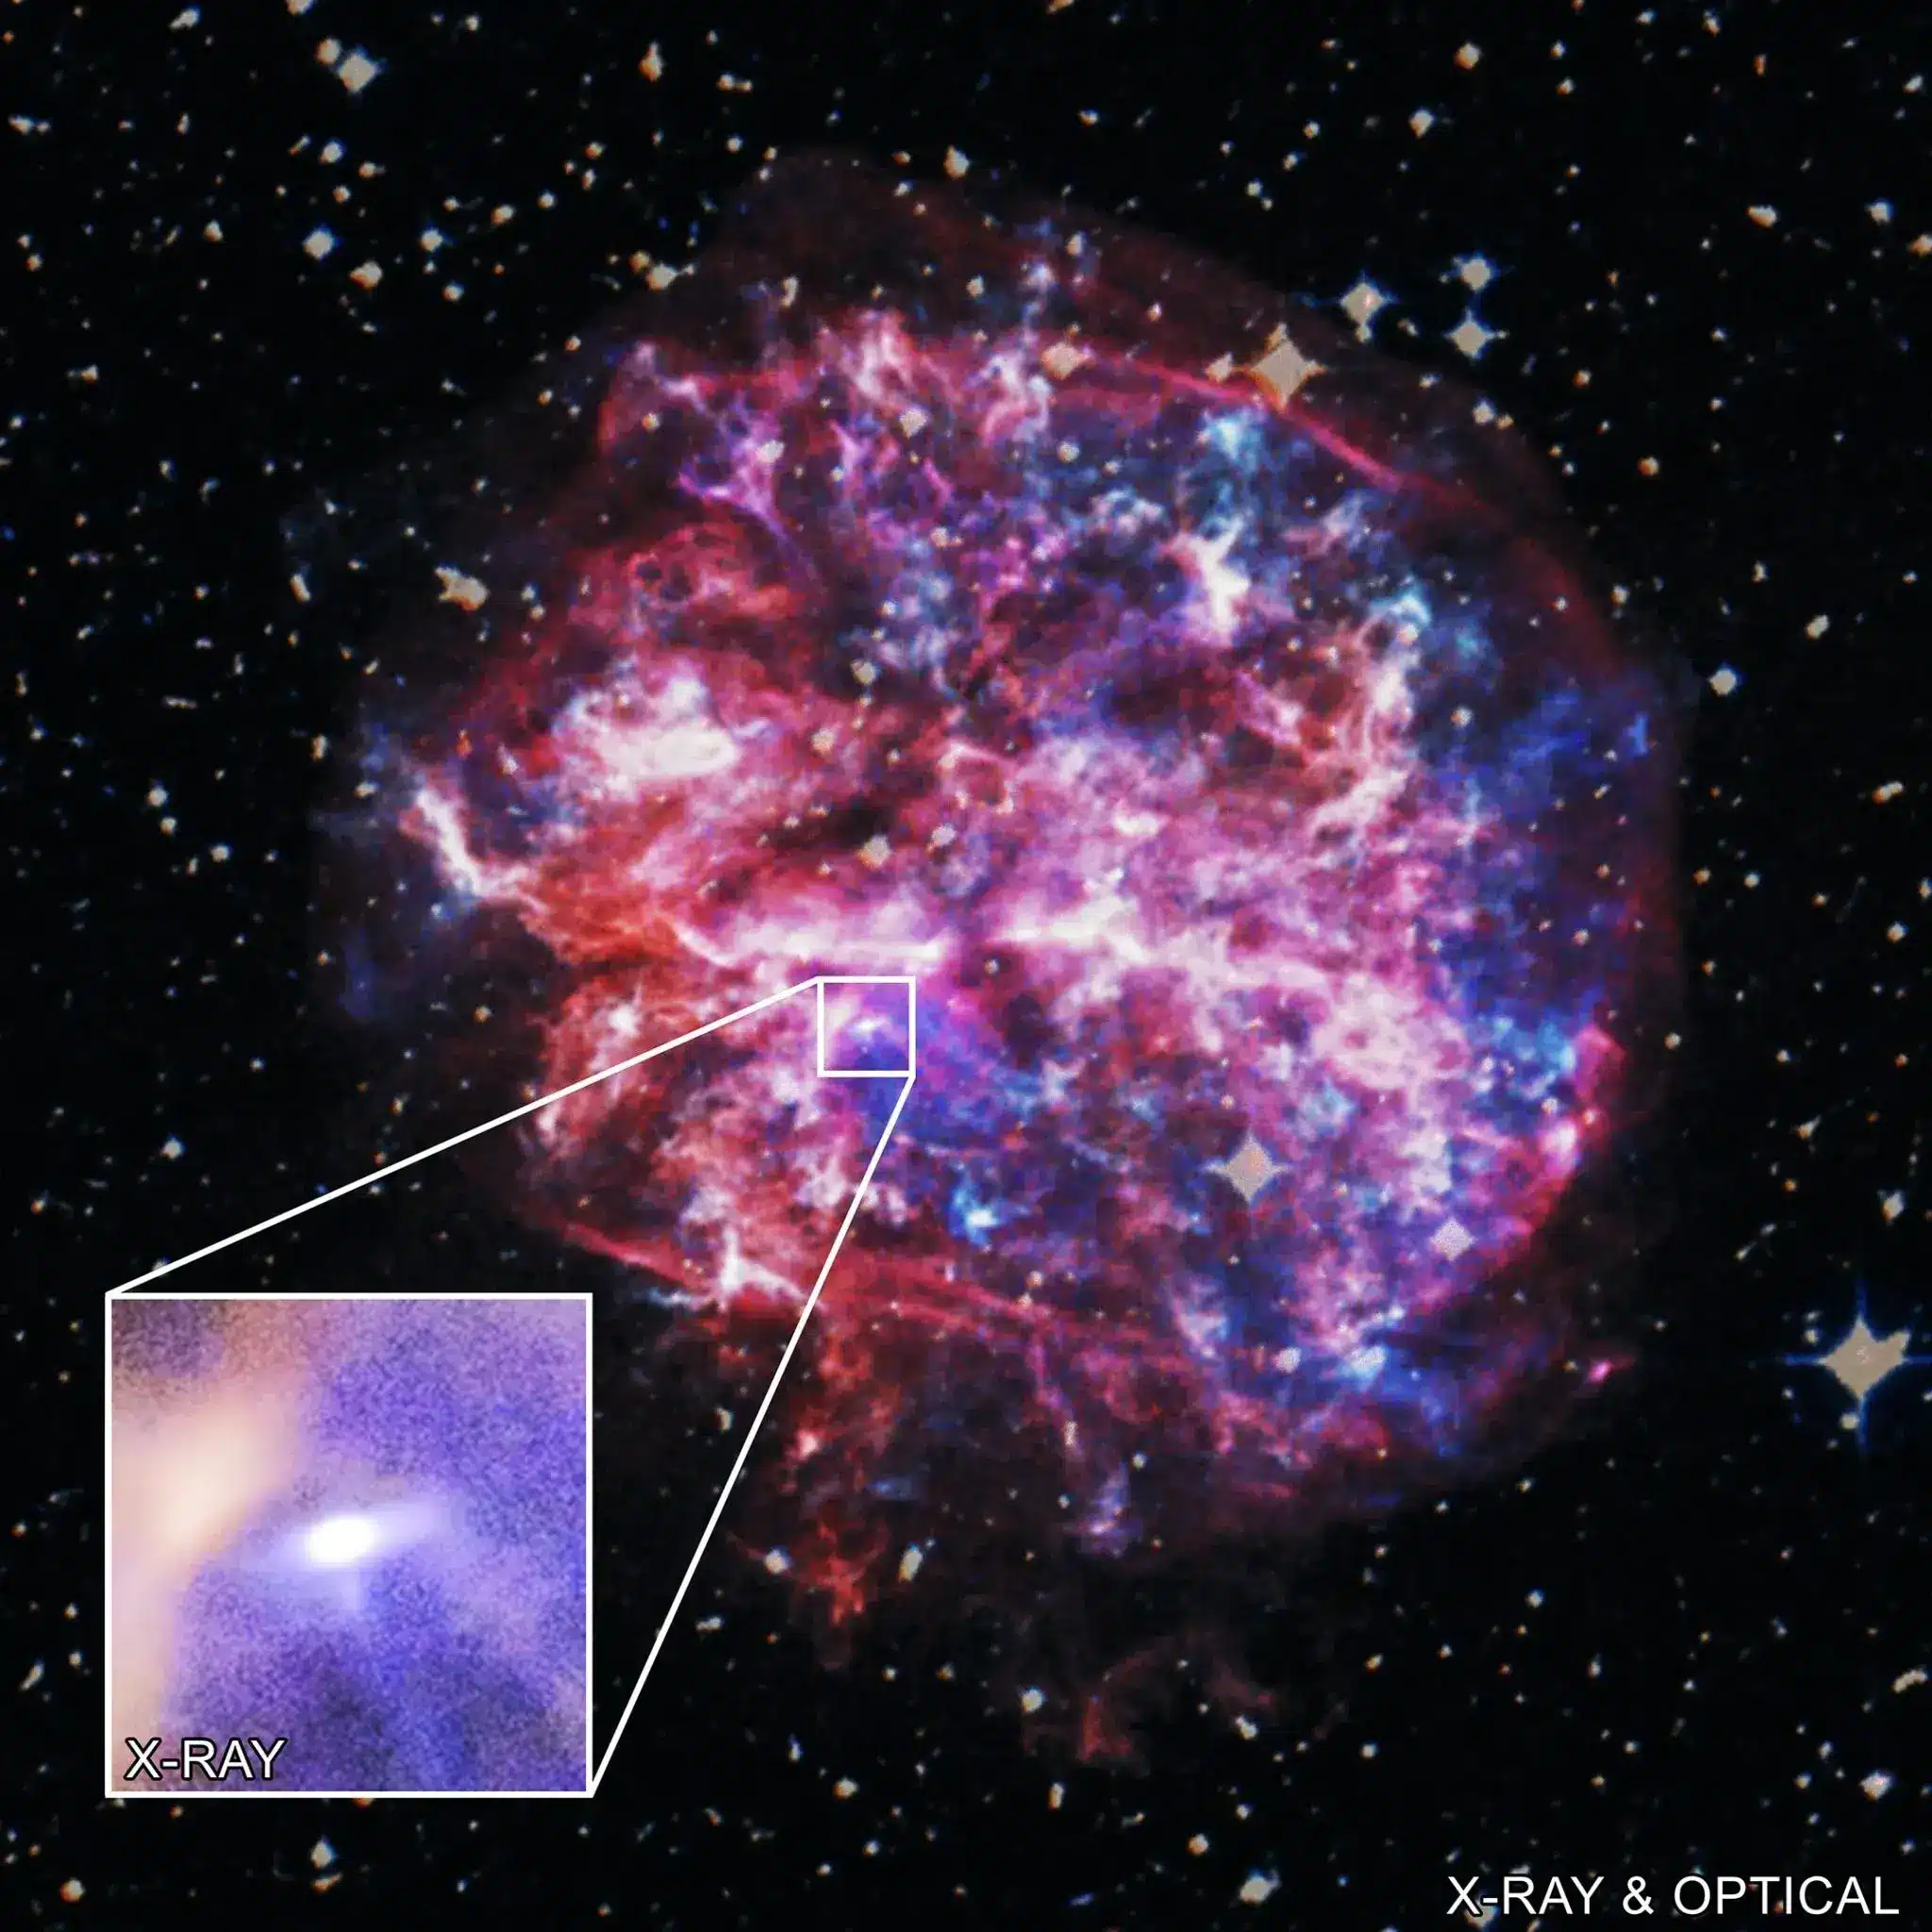 תמונת רנטגן מצ'נדרה ותמונה אופטית של שארית הסופרנובה G292.0+1.8 והפולסר שנע במהירות של יותר ממיליון וחצי קמ"ש. קרדיט: X-ray: NASA/CXC/SAO/L. Xi et al.; Optical: Palomar DSS2